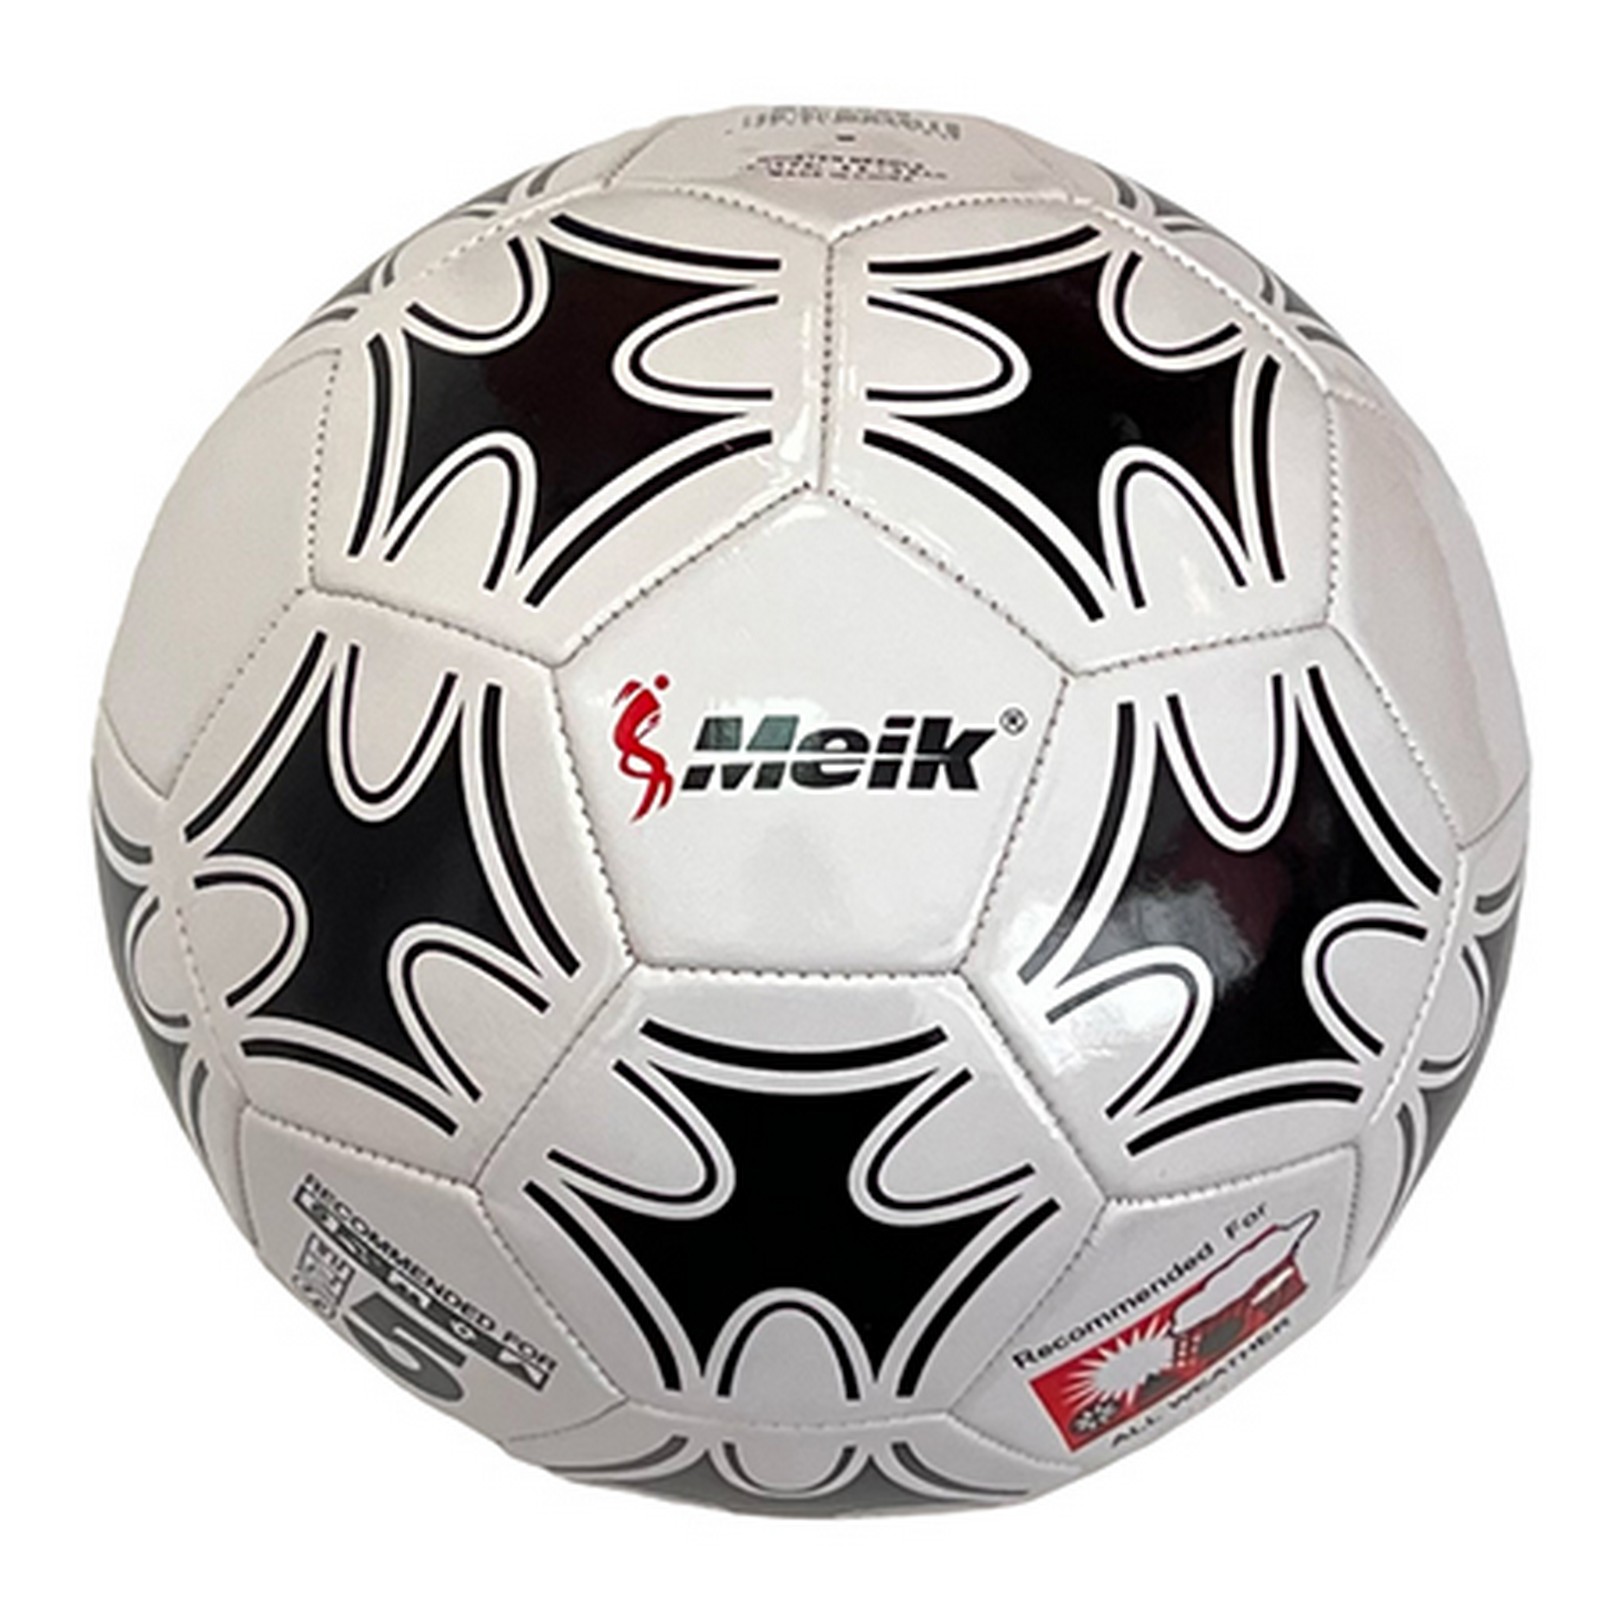 Мяч футбольный Meik 2000 R18018-5 р.5 1600_1600